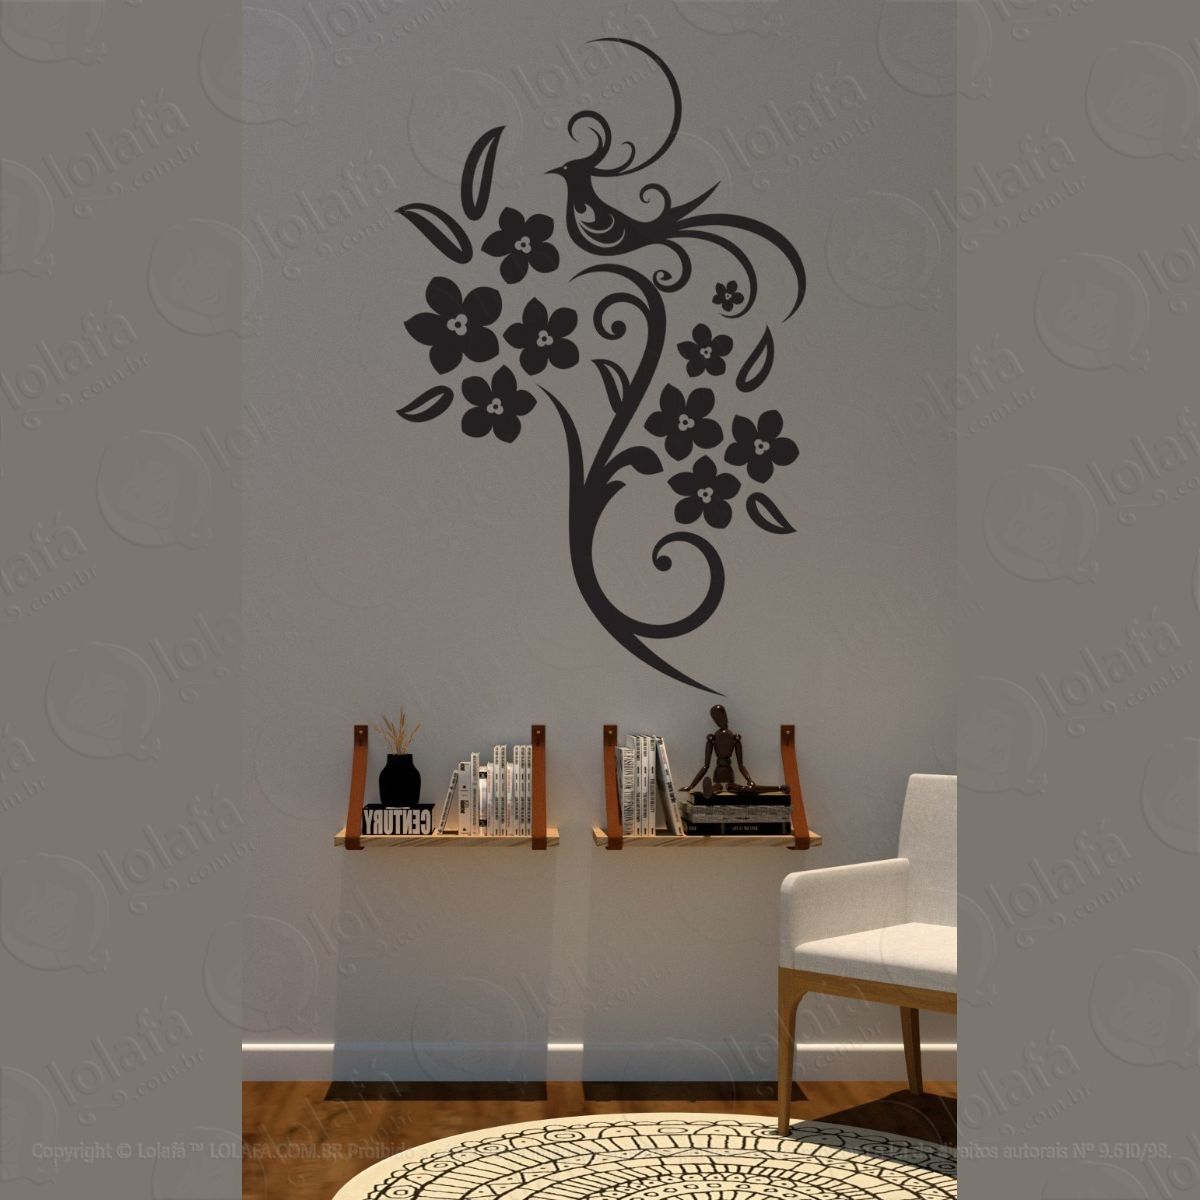 adesivo floral parede + brinde mod:1527